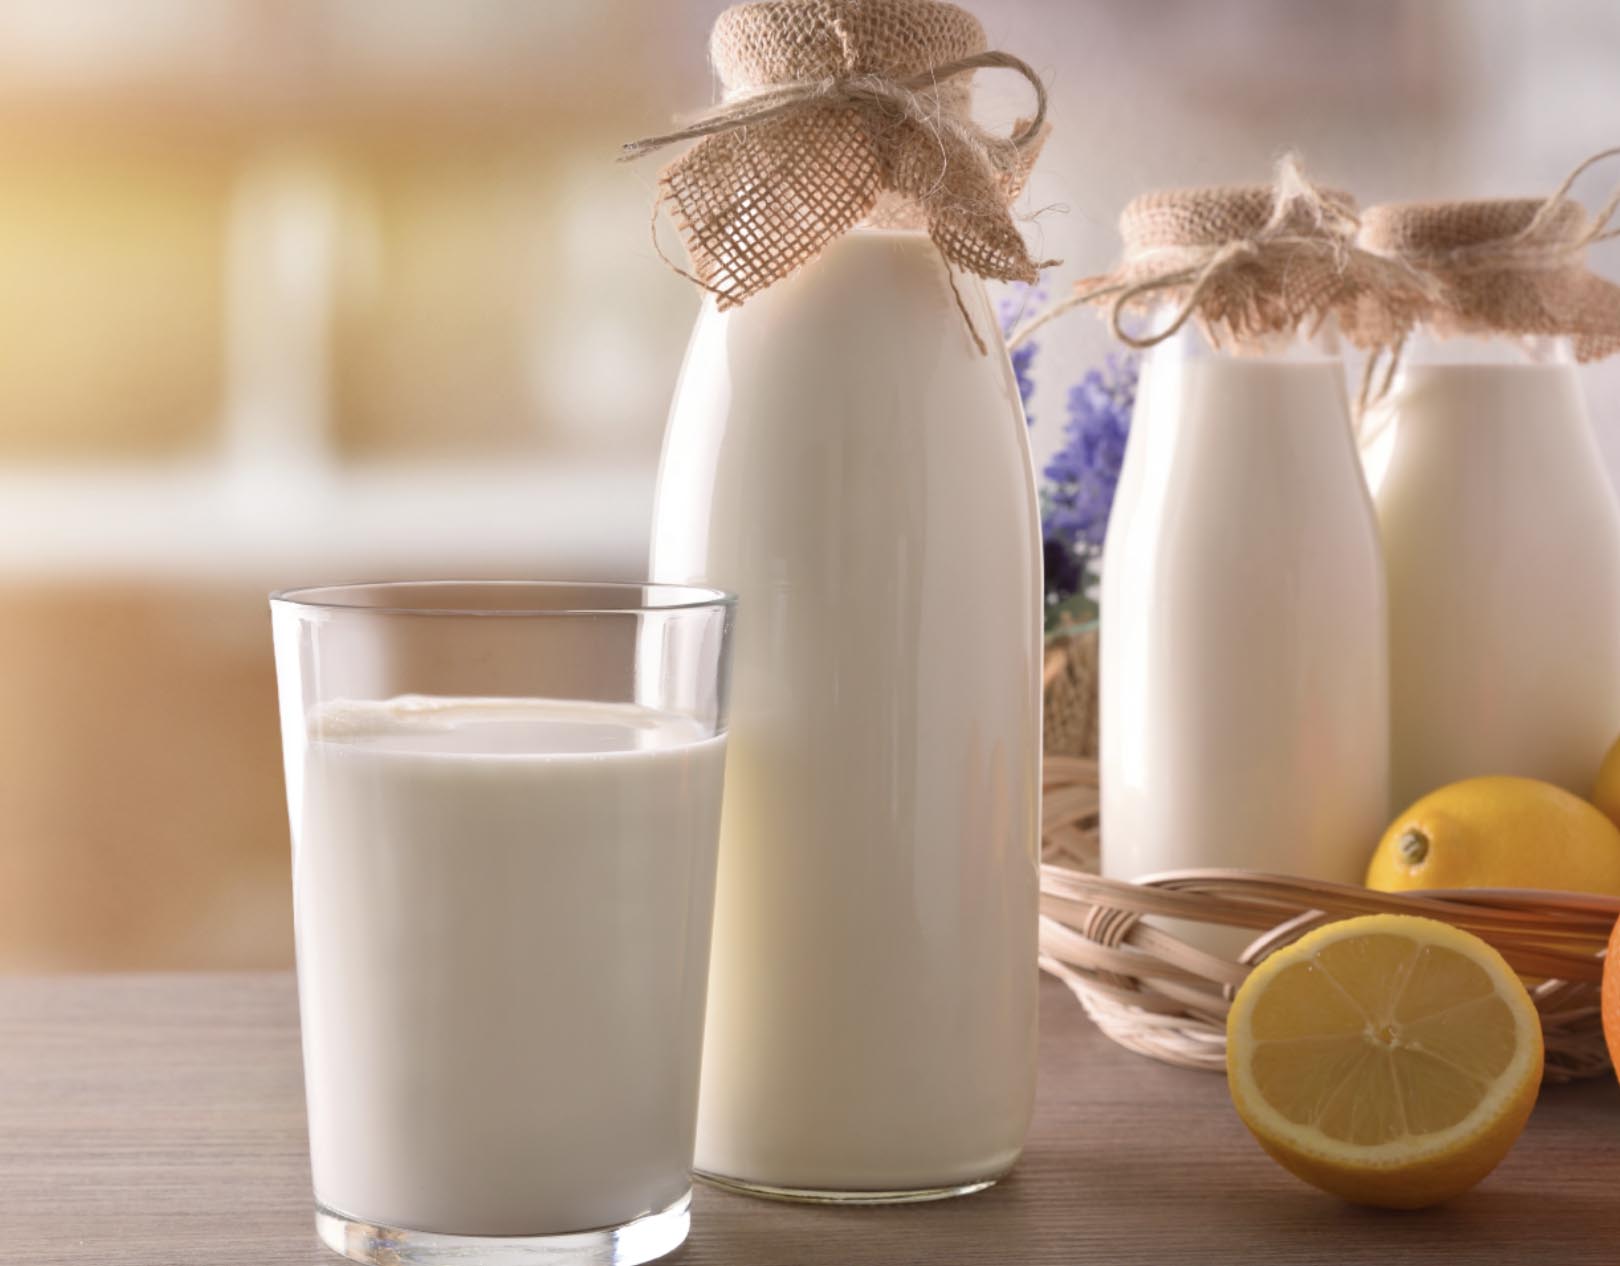 El precio mundial de la leche cambió de dirección y está cayendo nuevamente